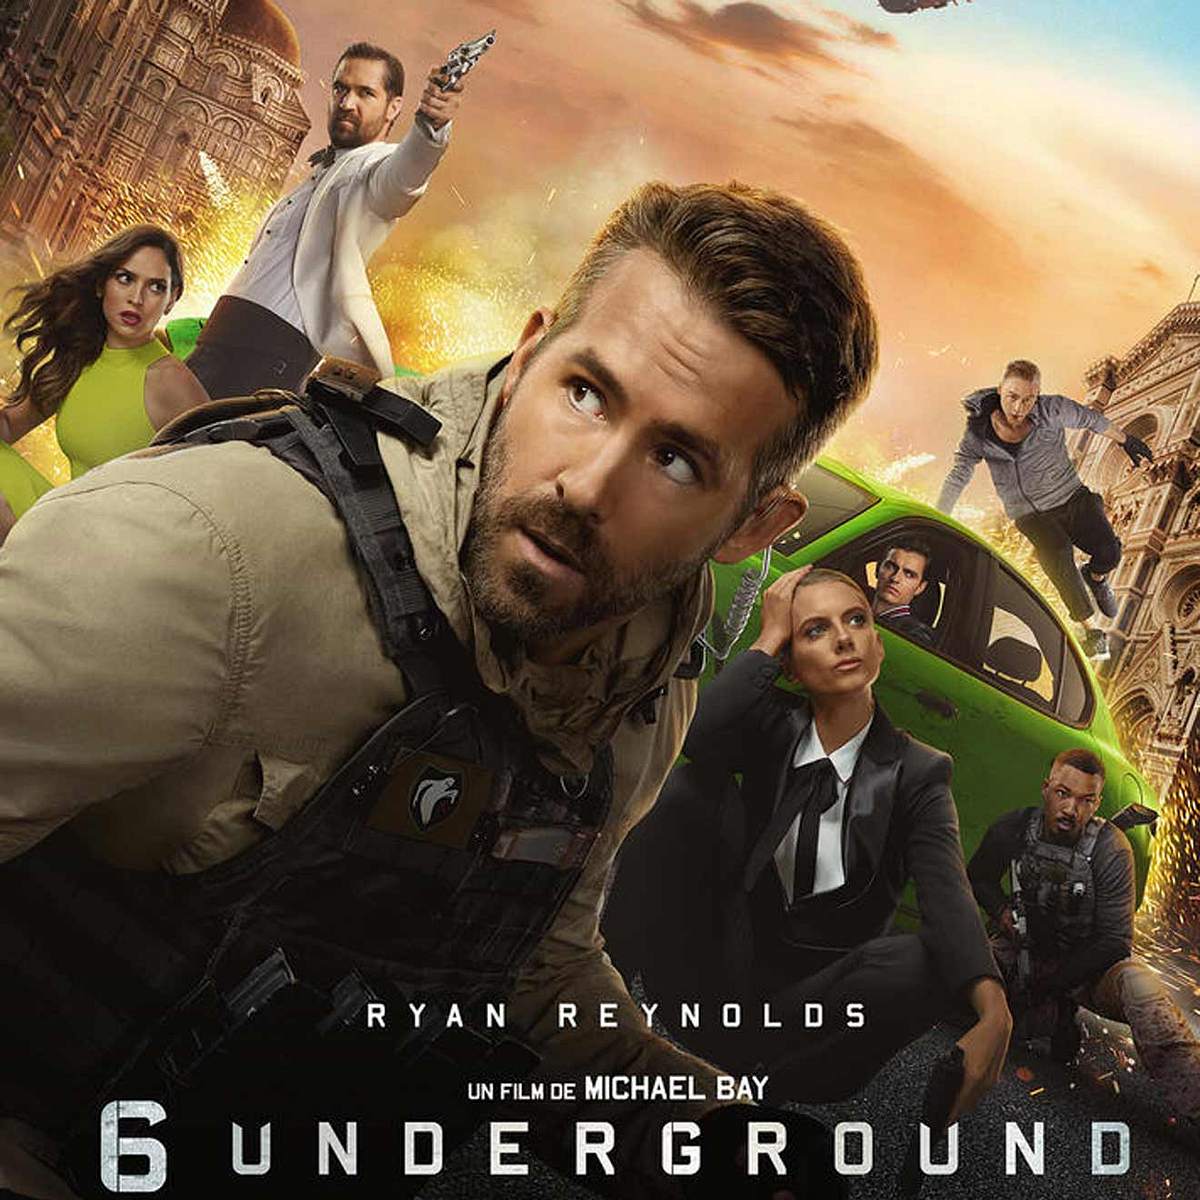 Die besten Netflix-Filme gegen Langeweile 6 Underground